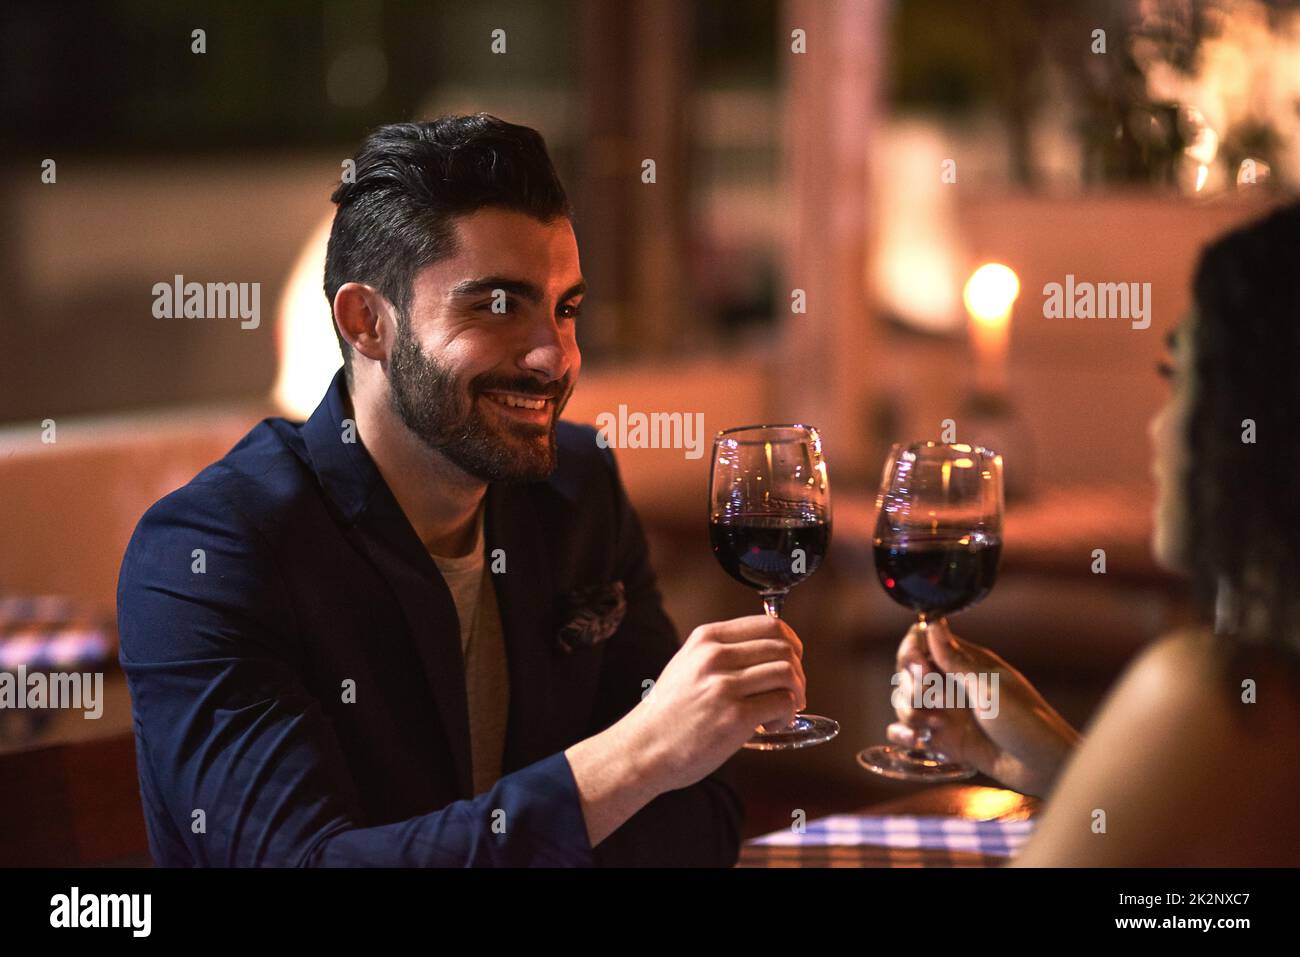 Una bella serata fuori. Scatto di una giovane coppia allegra che ha un brindisi celebrativo con i calici del vino mentre guardandosi negli occhi altri sopra la cena fuori alla notte. Foto Stock